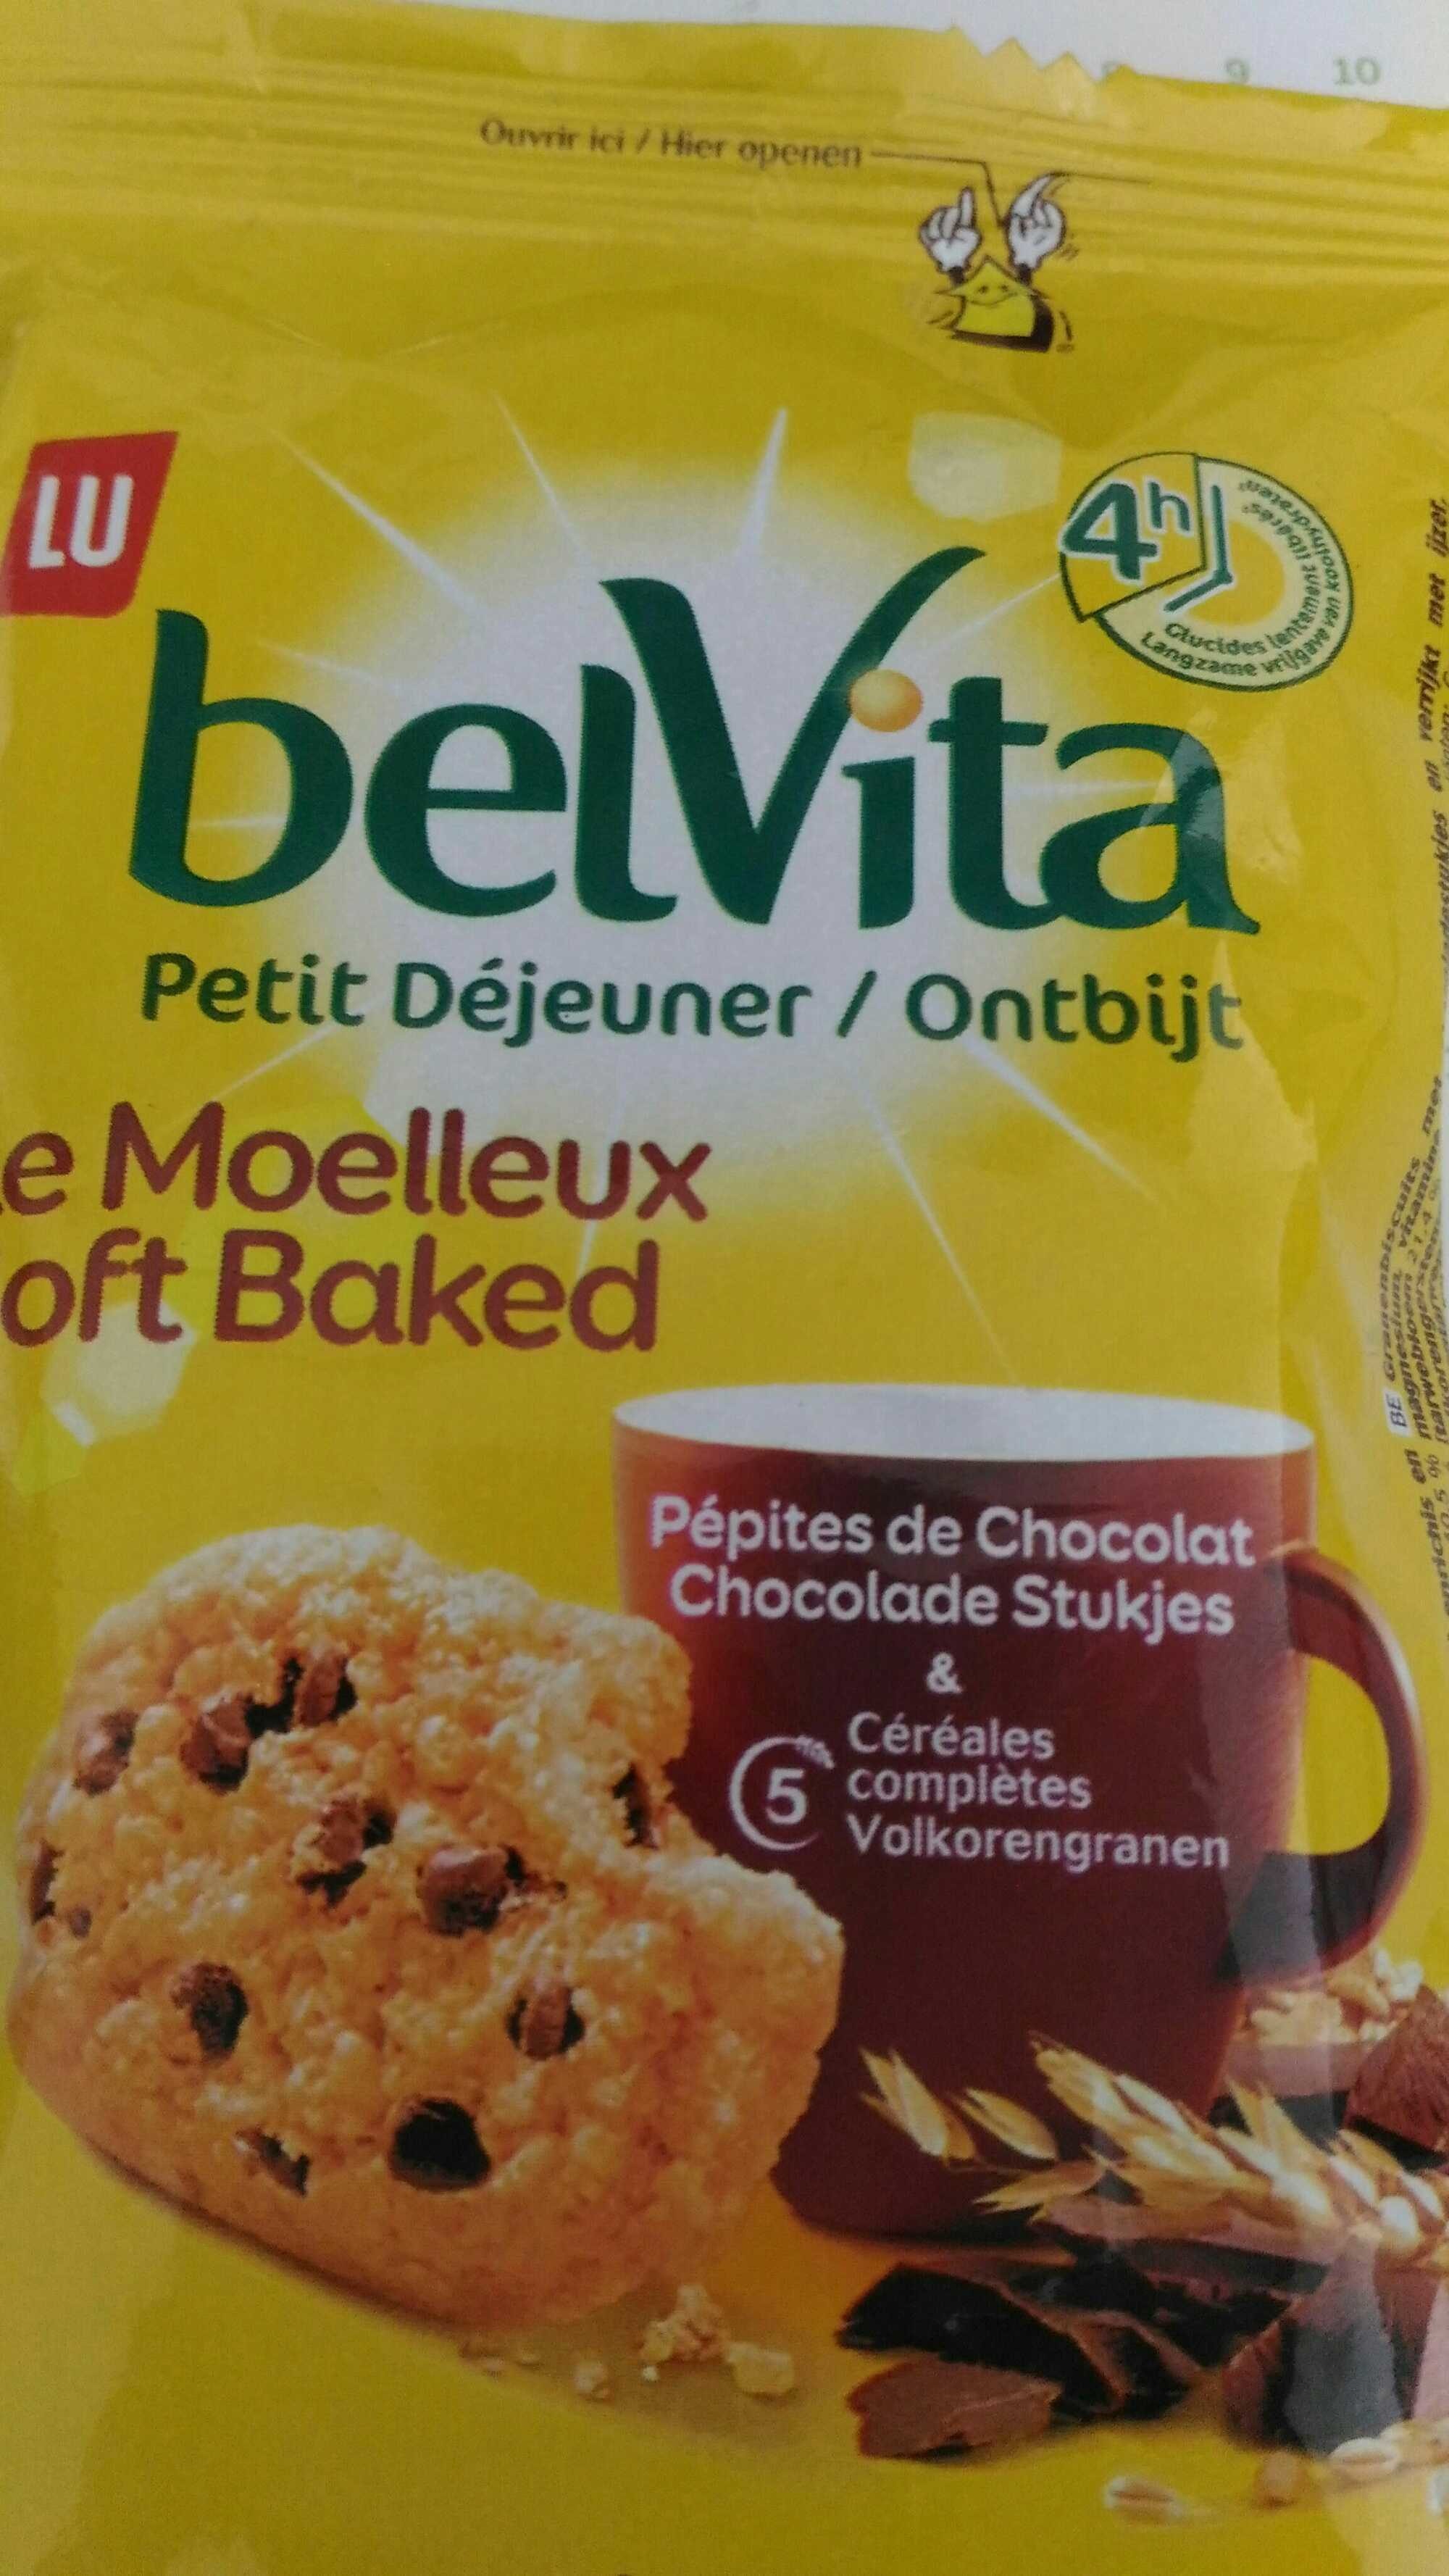 Belvita Le Moelleux - Pépites de Chocolat - Product - fr